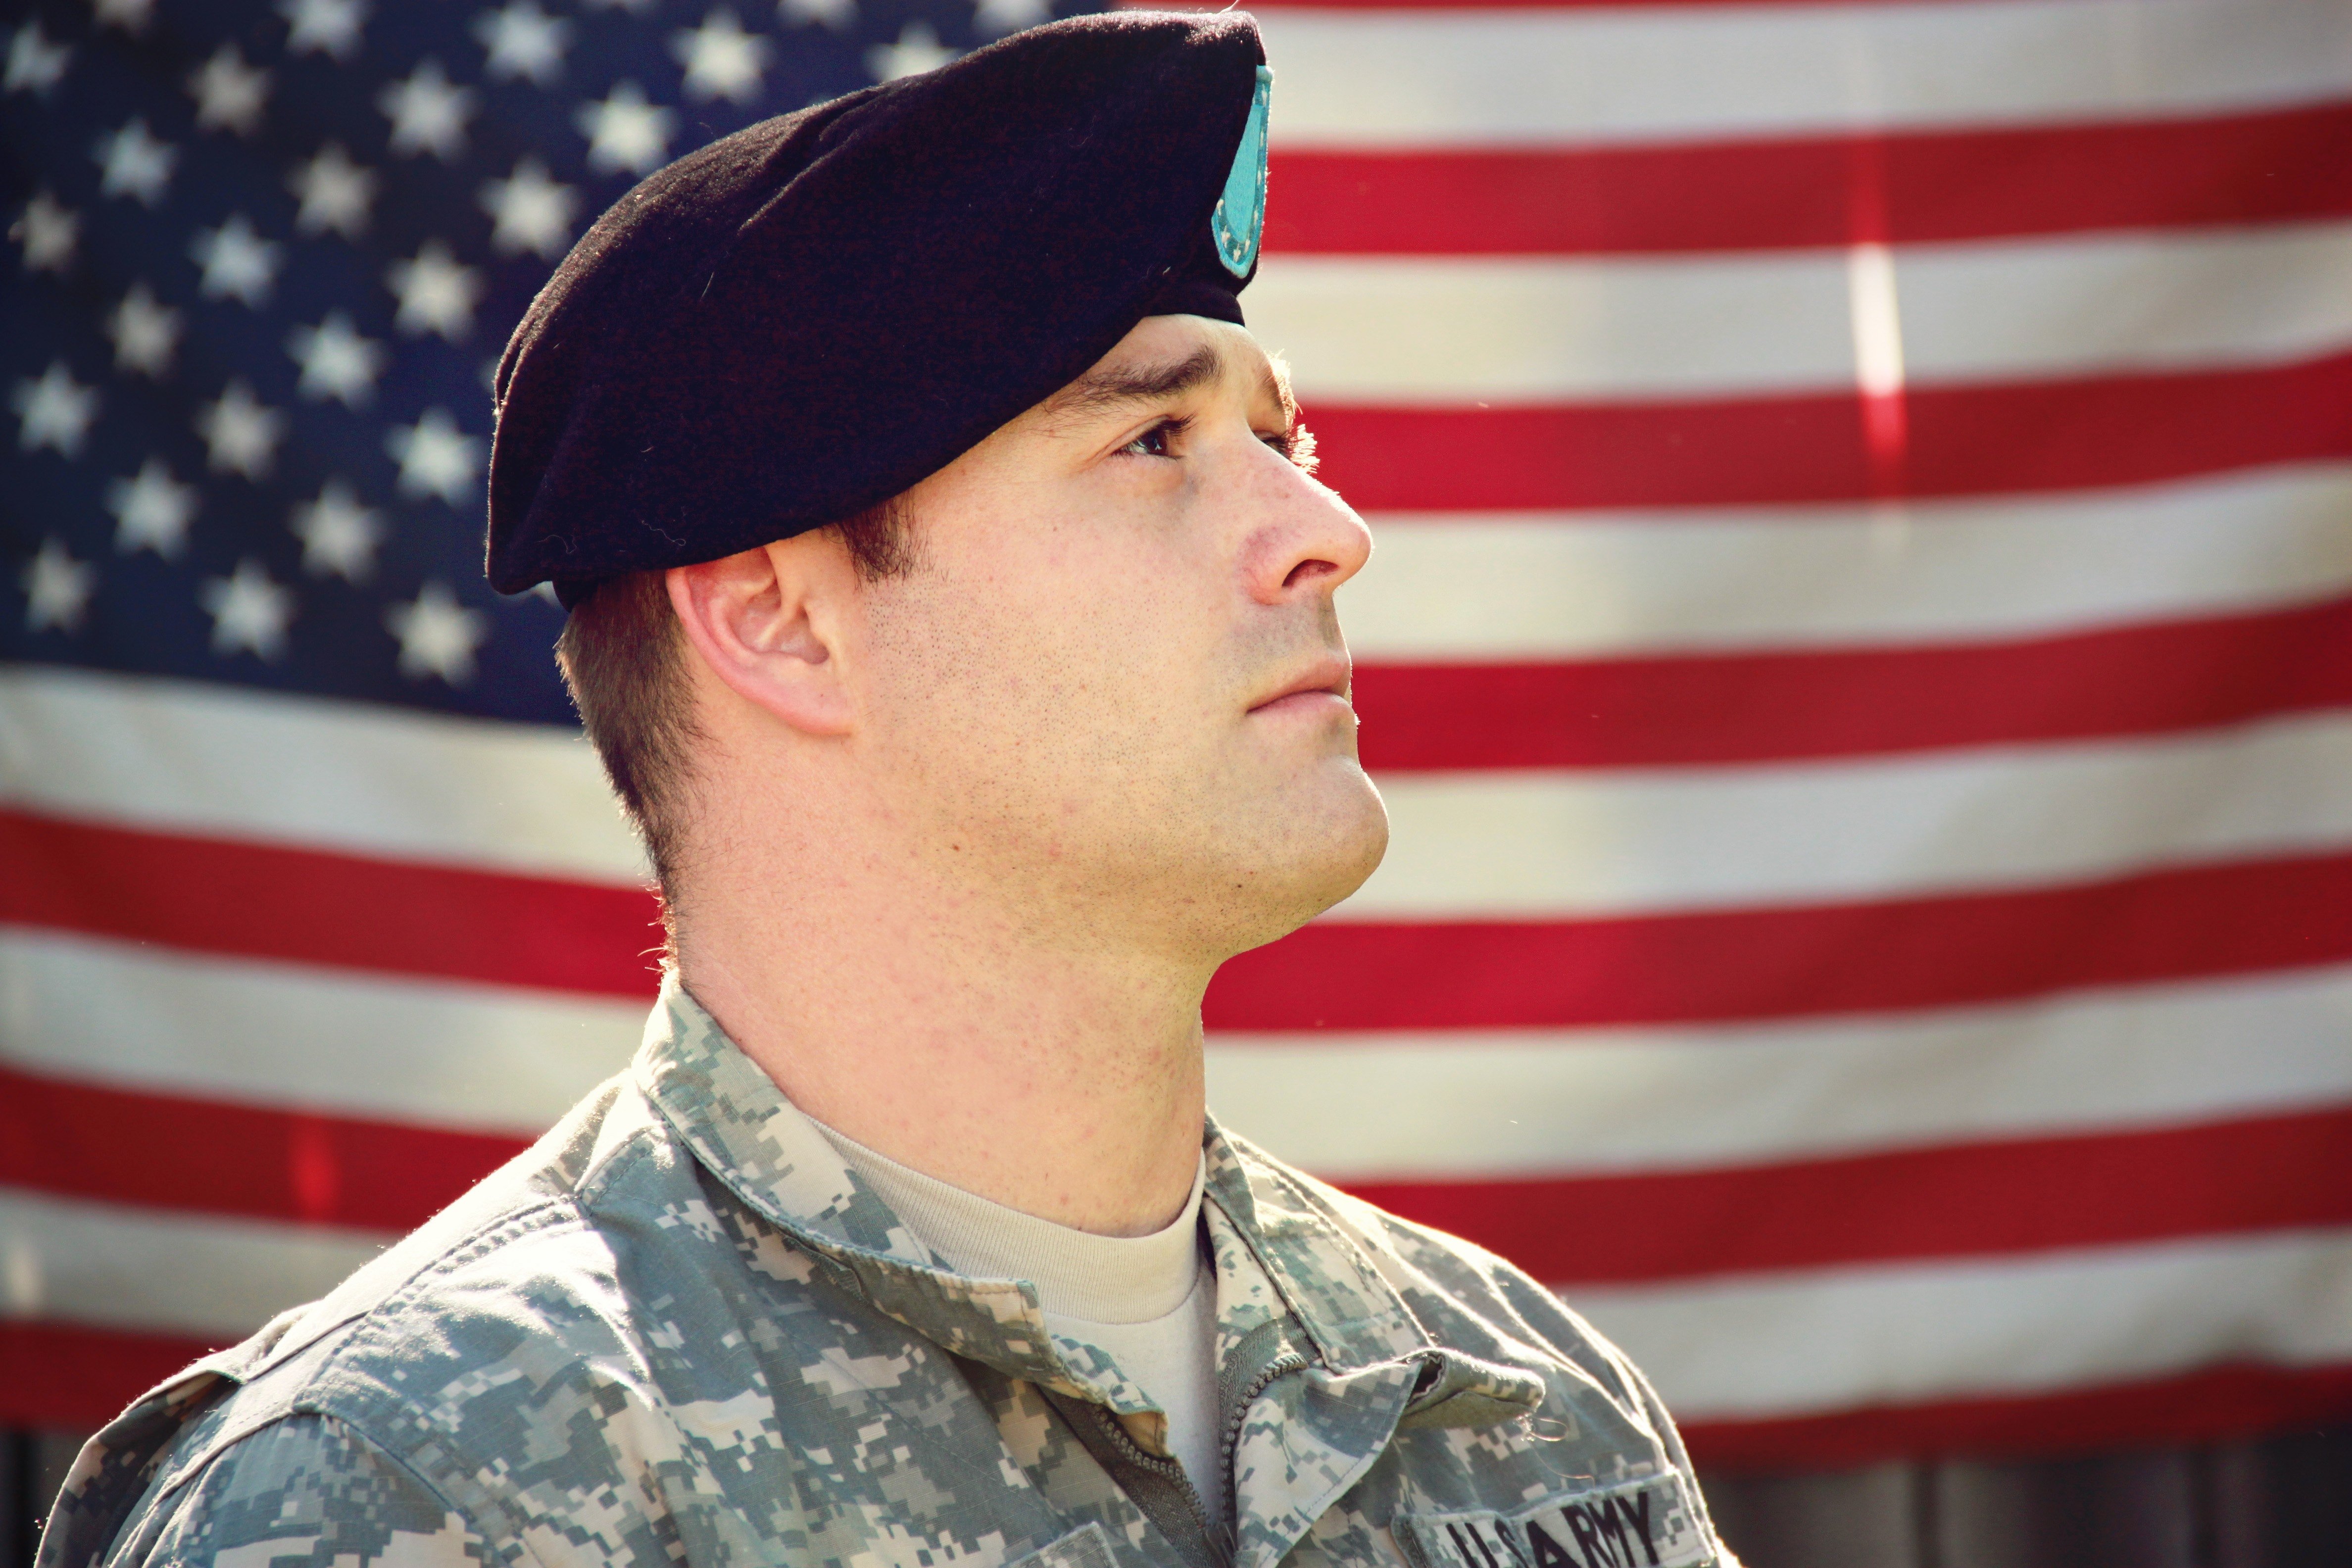 Soldado posando de perfil con la bandera de los Estados Unidos de América en el fondo. | Foto: Pexels